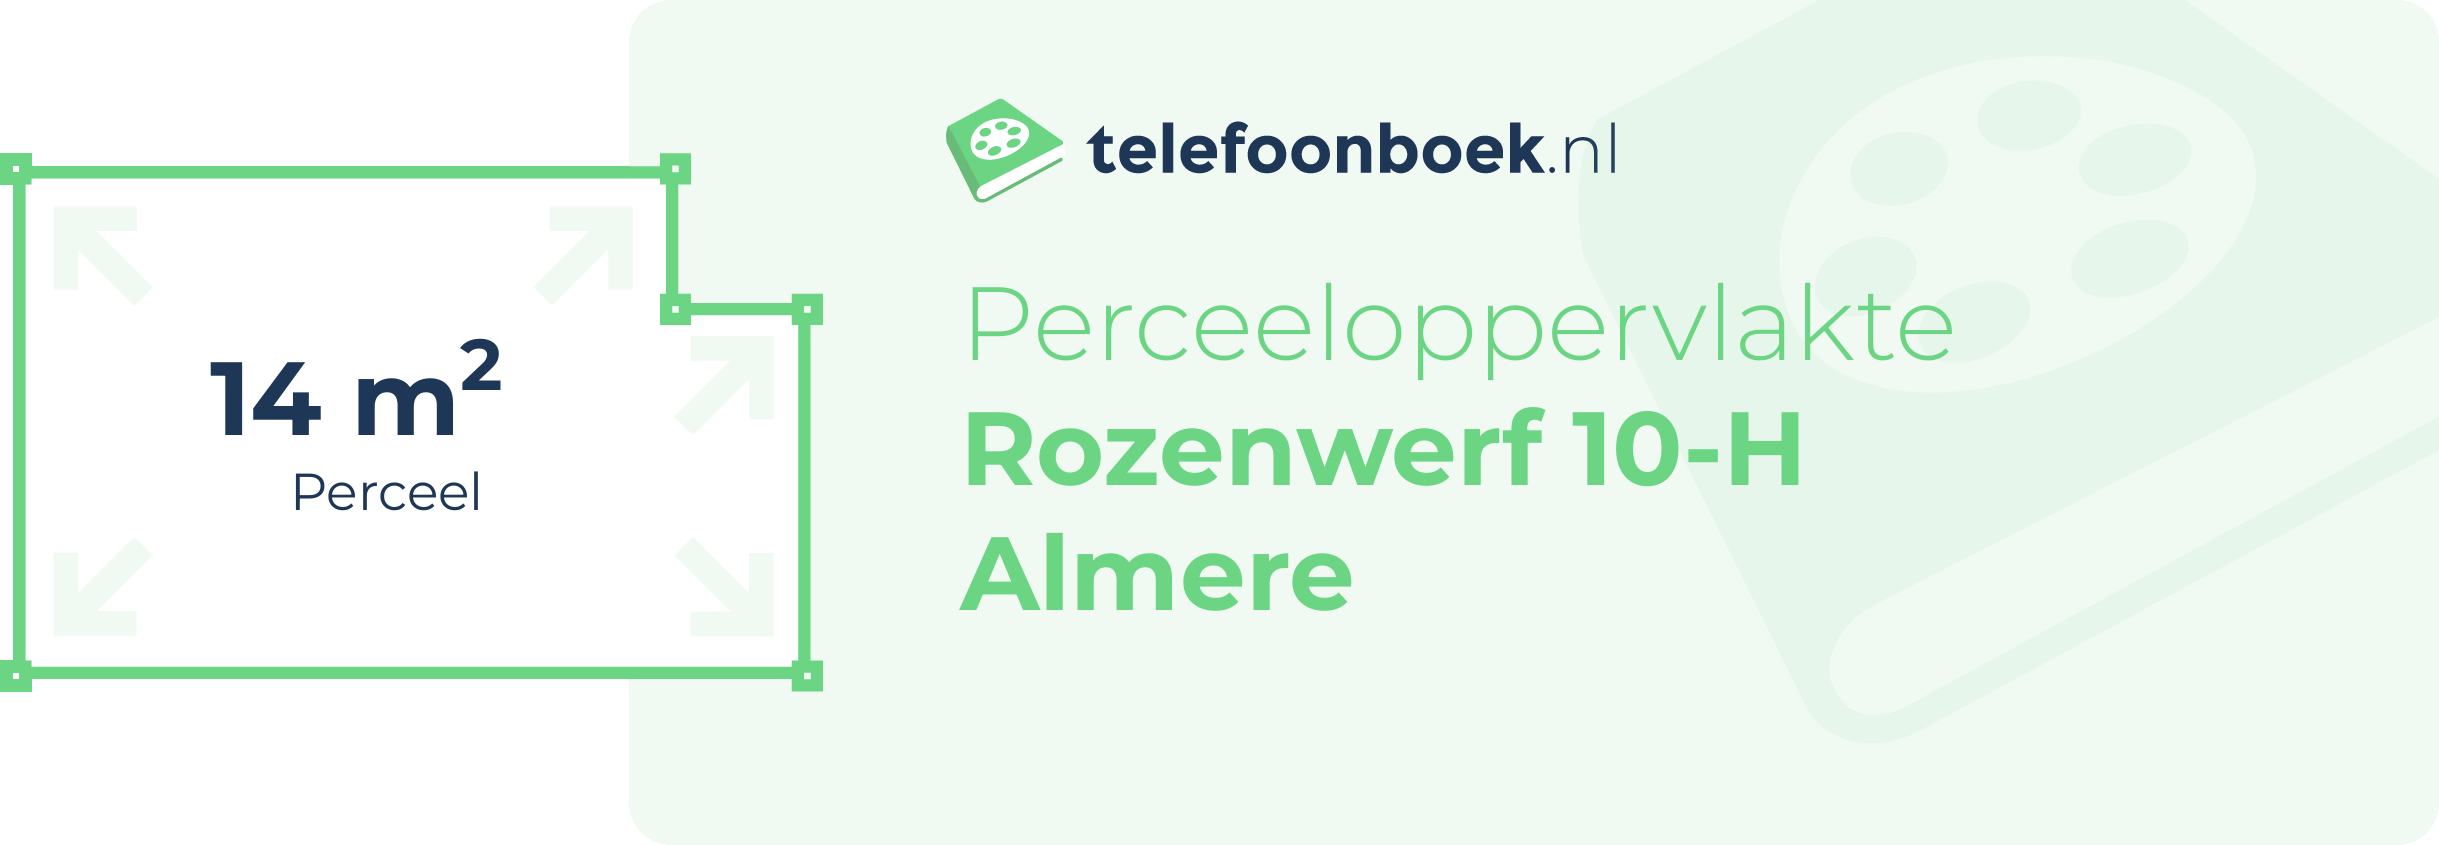 Perceeloppervlakte Rozenwerf 10-H Almere